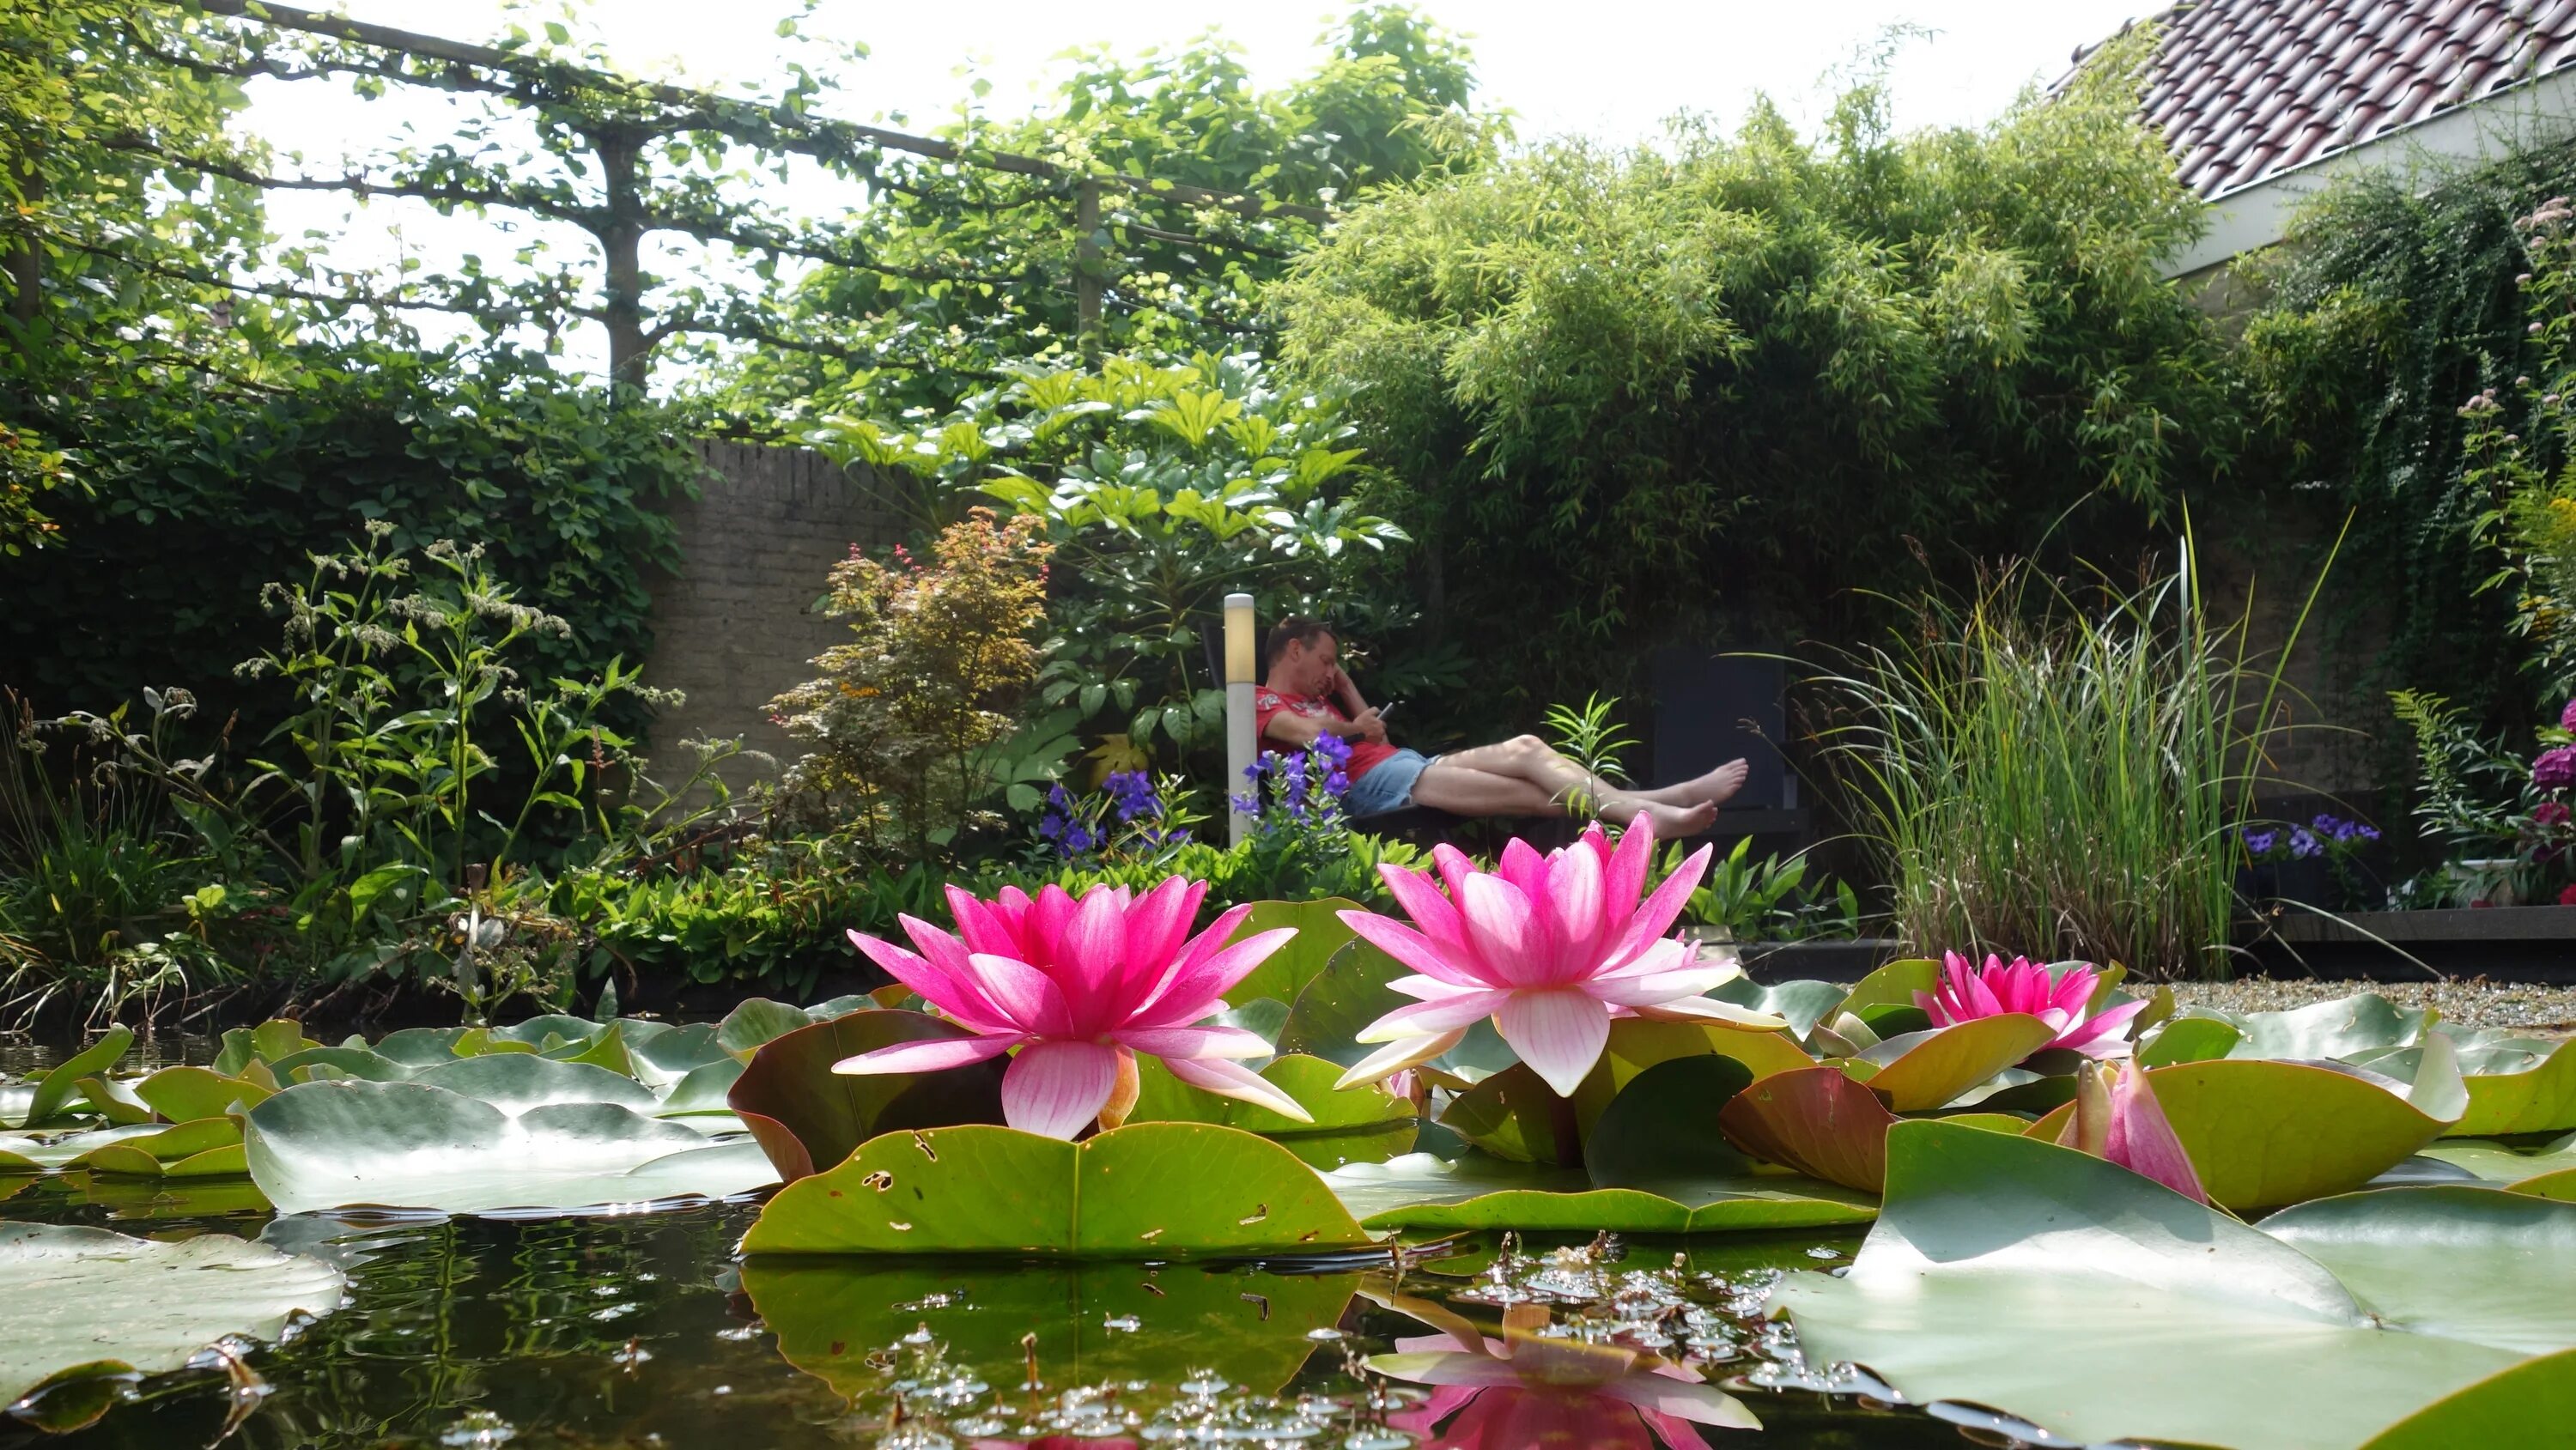 Цветочный пруд 22. Дендрарий Сочи кувшинки. Ботанический сад Киото водоем лотоса. Киотский Ботанический сад в Японии пруд с лотосами. Ботанический сад кувшинки СПБ.